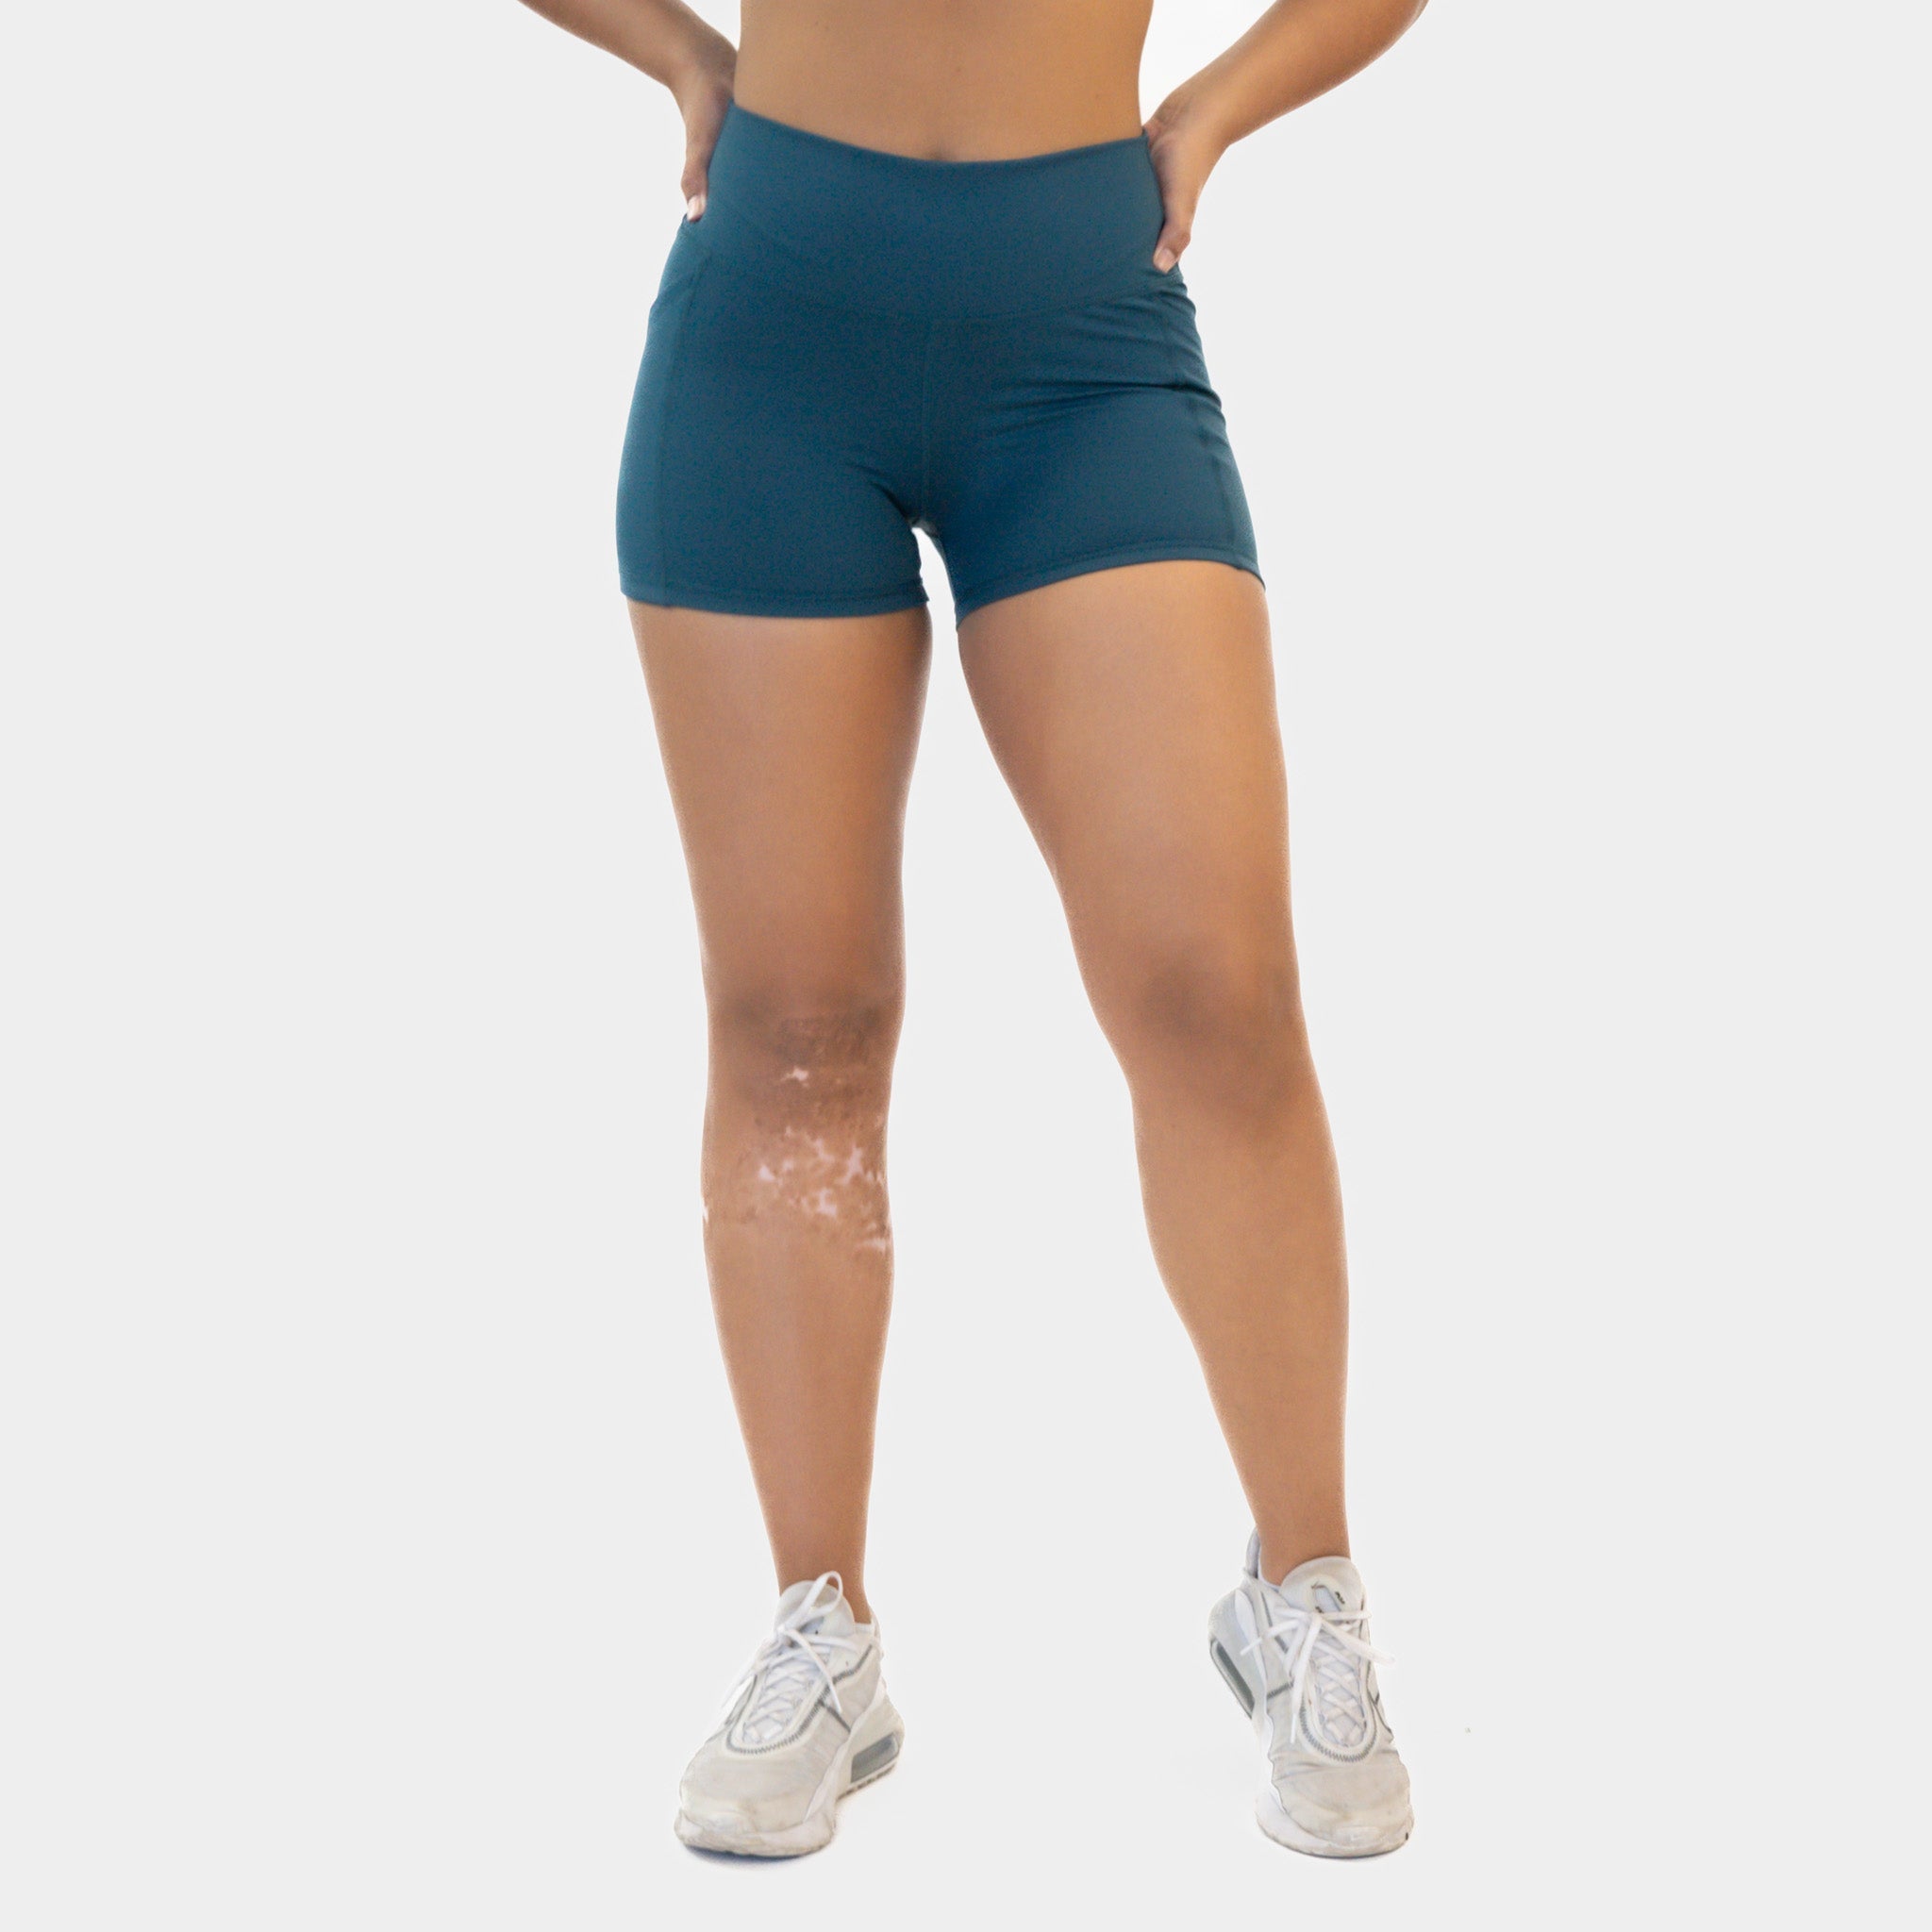 Senita Athletics Lux Rio Shorts 3.75 inch inseam size Small in